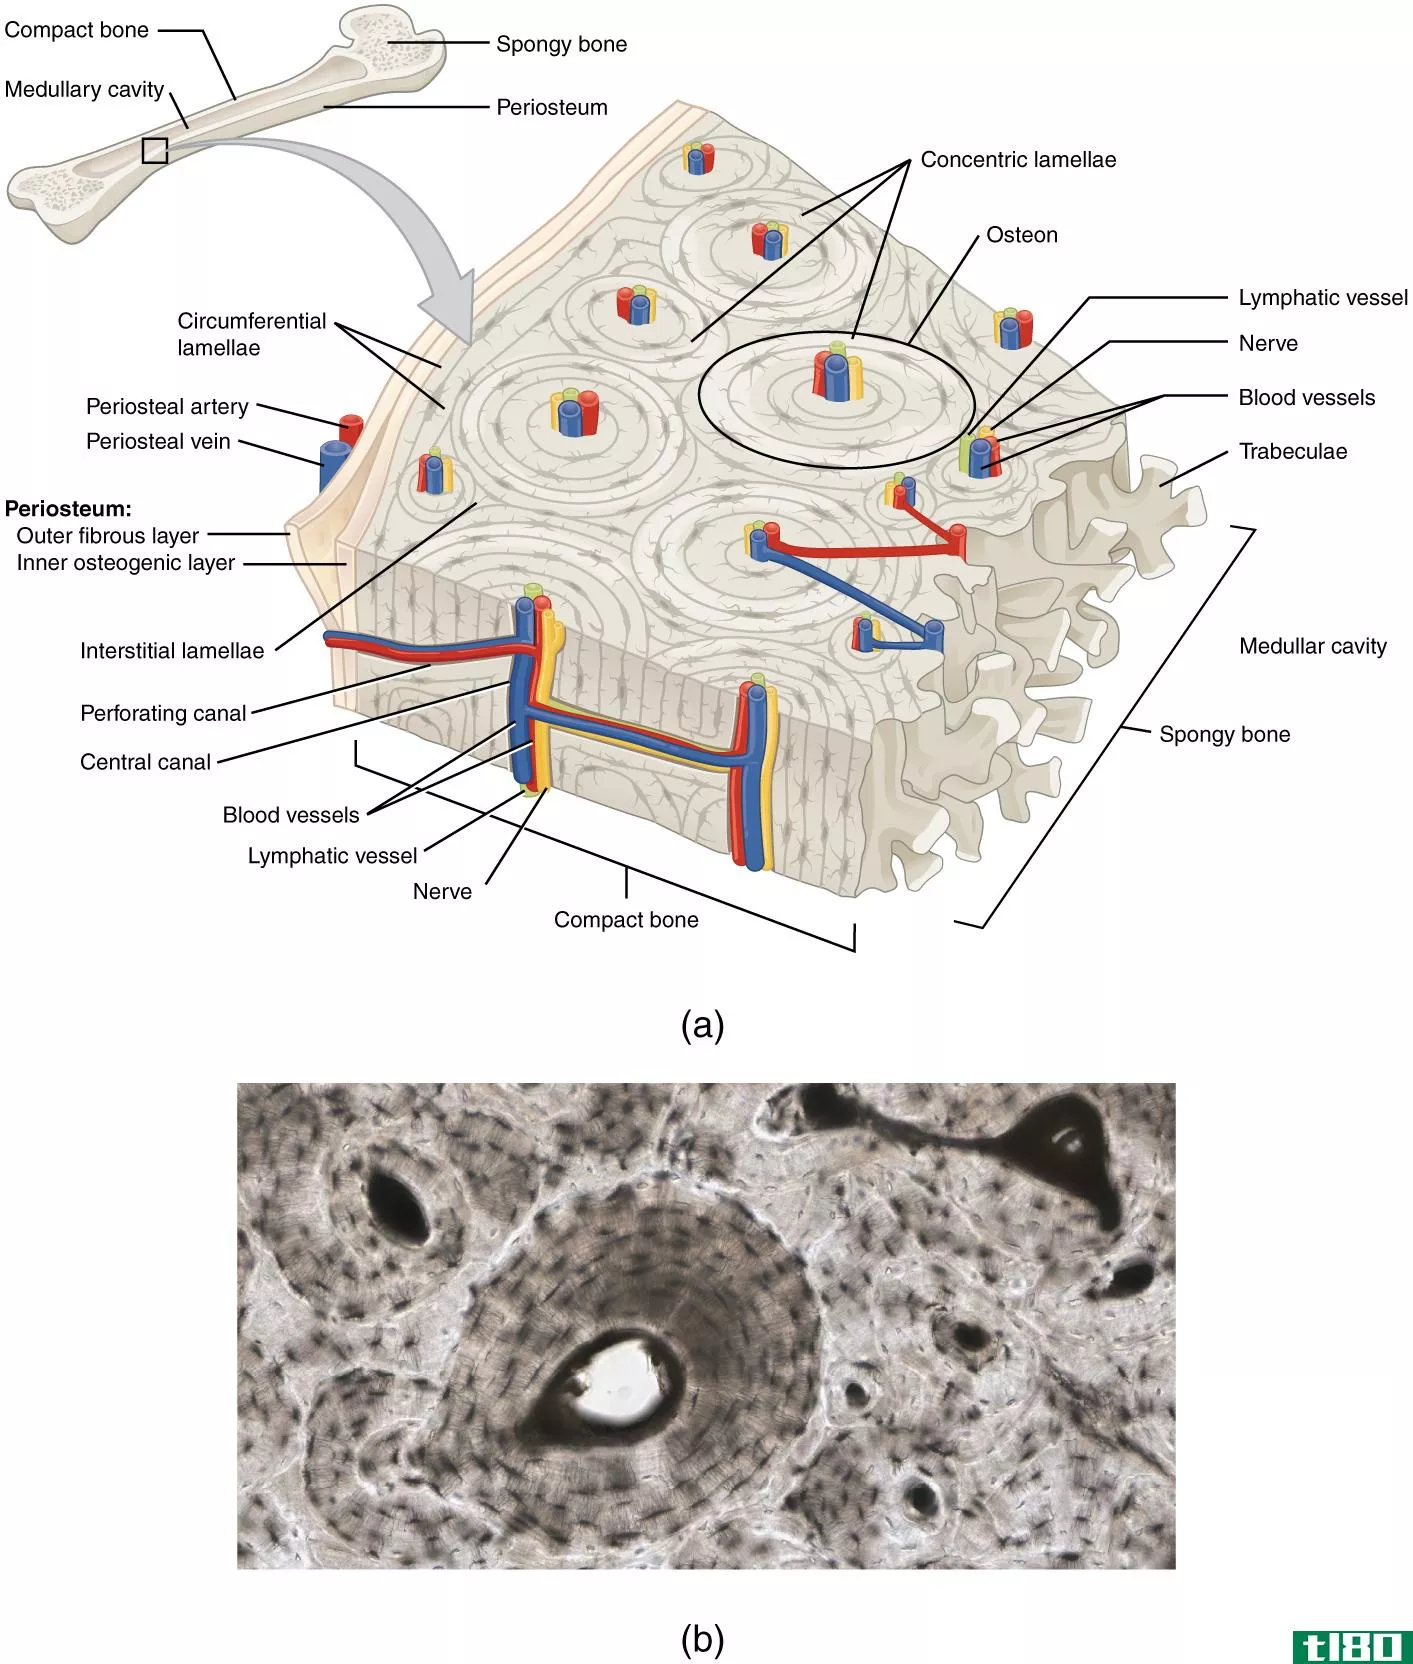 软骨膜(perichondrium)和骨膜(periosteum)的区别